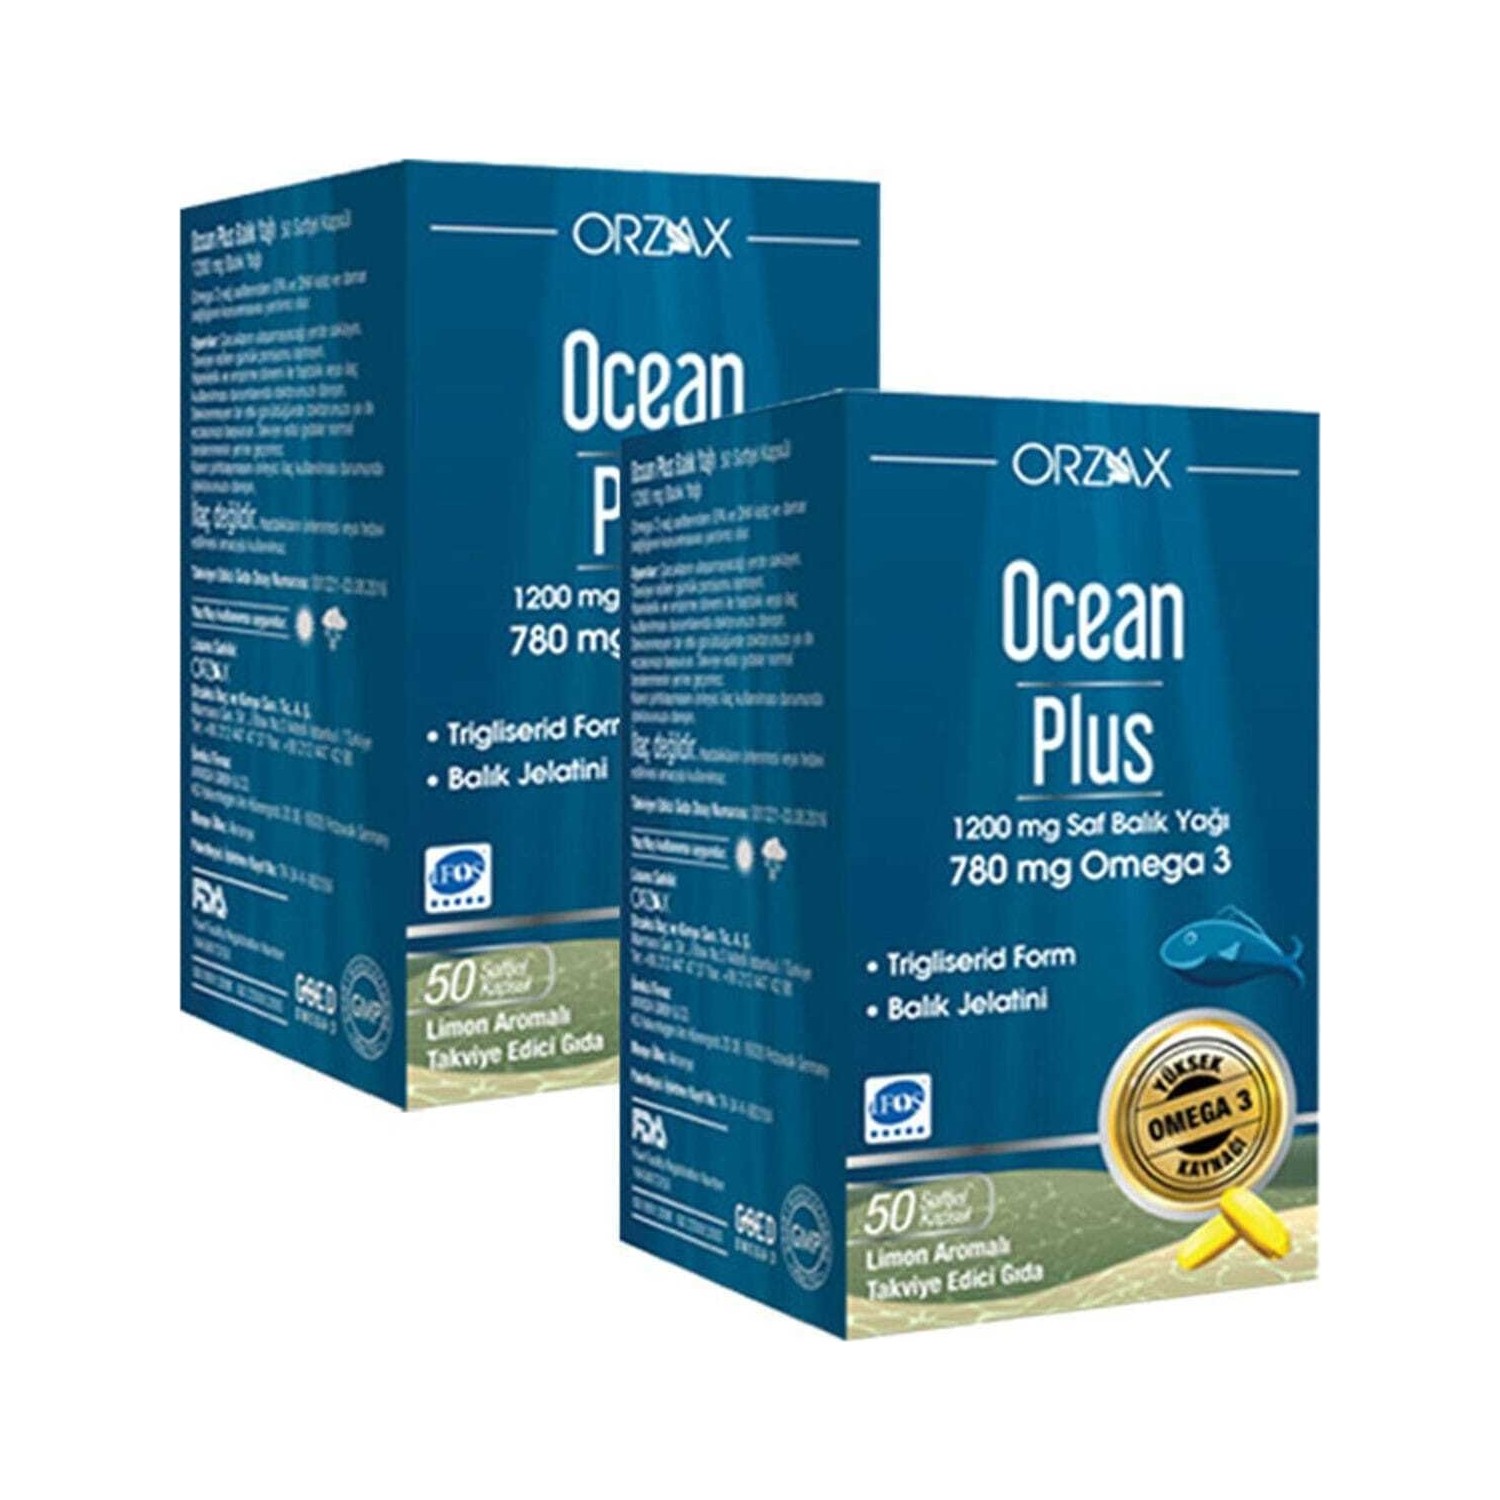 Омега-3 Plus Orzax 1200 мг, 2 упаковки по 50 капсул цена и фото